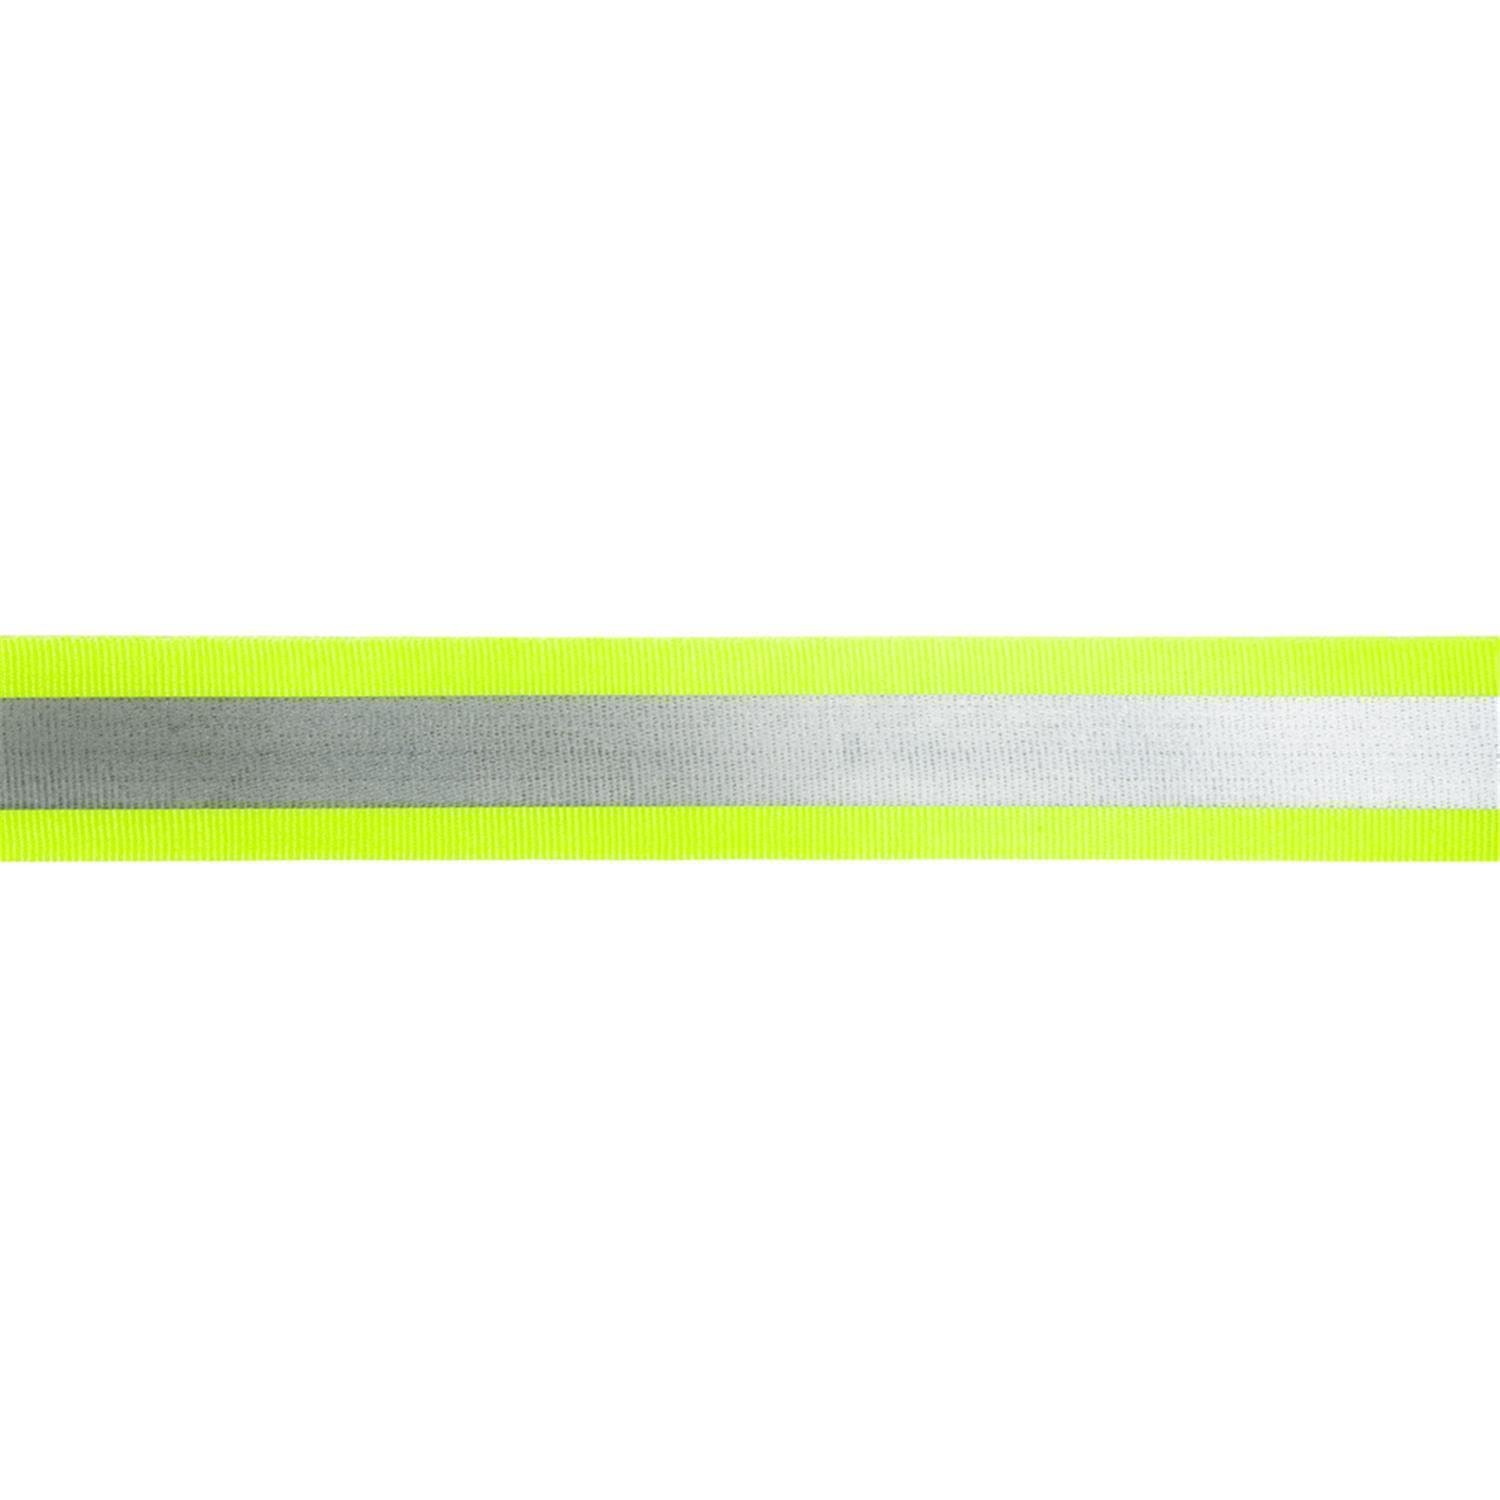 Reflektorband 50mm breit in 2 Farben gelb-silber 50 Meter